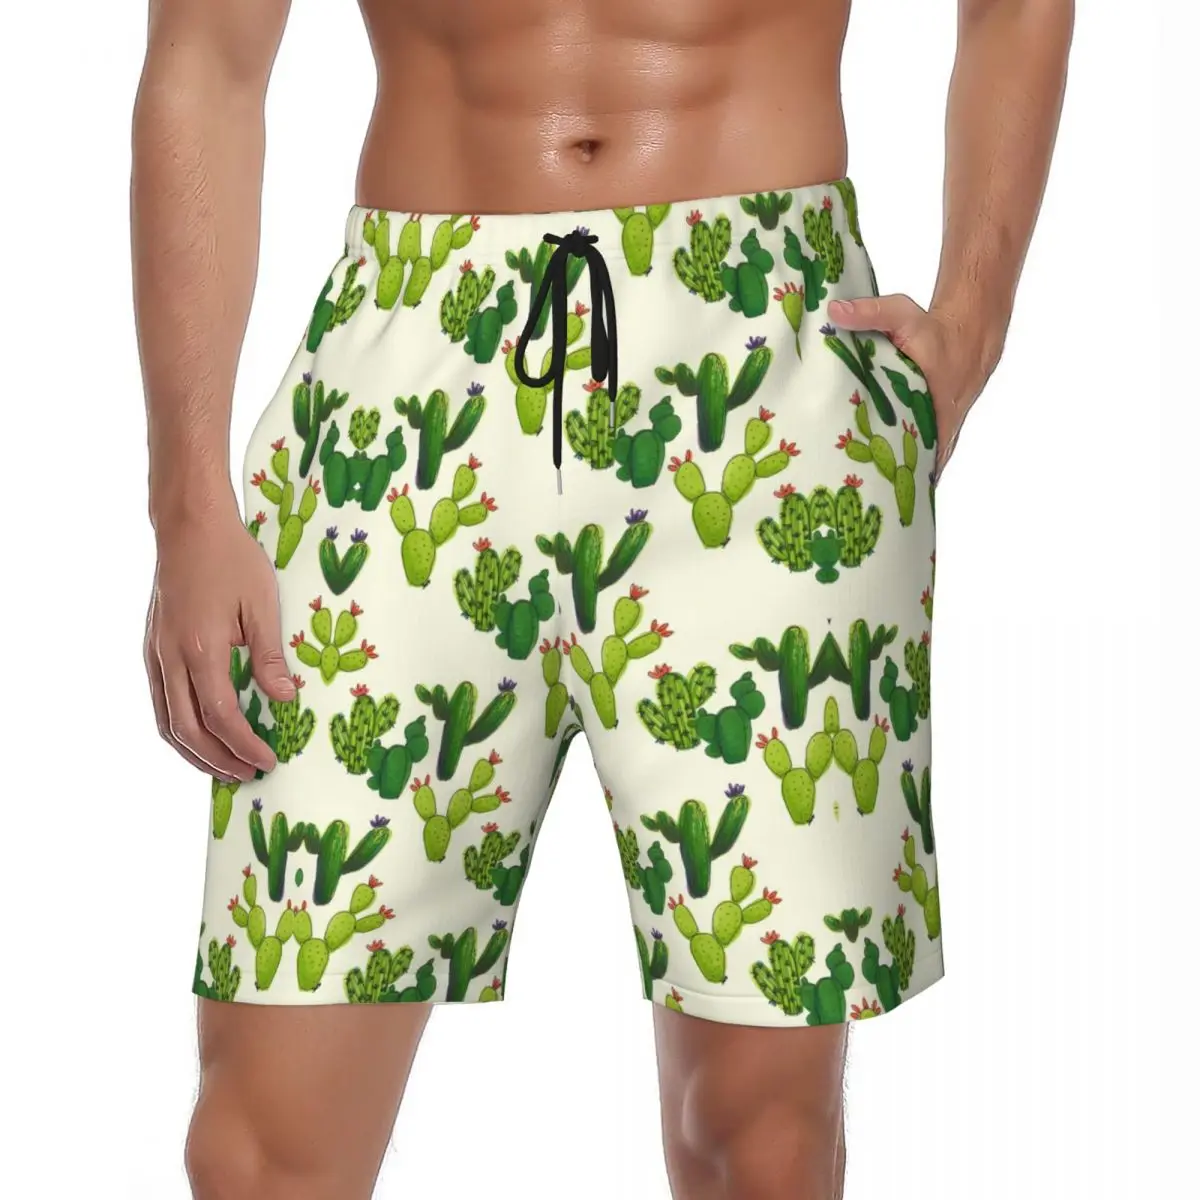 

Забавные пляжные шорты С КАКТУСОМ, Летние Гавайские зеленые спортивные пляжные шорты для фитнеса, мужские удобные стильные плавки оверсайз